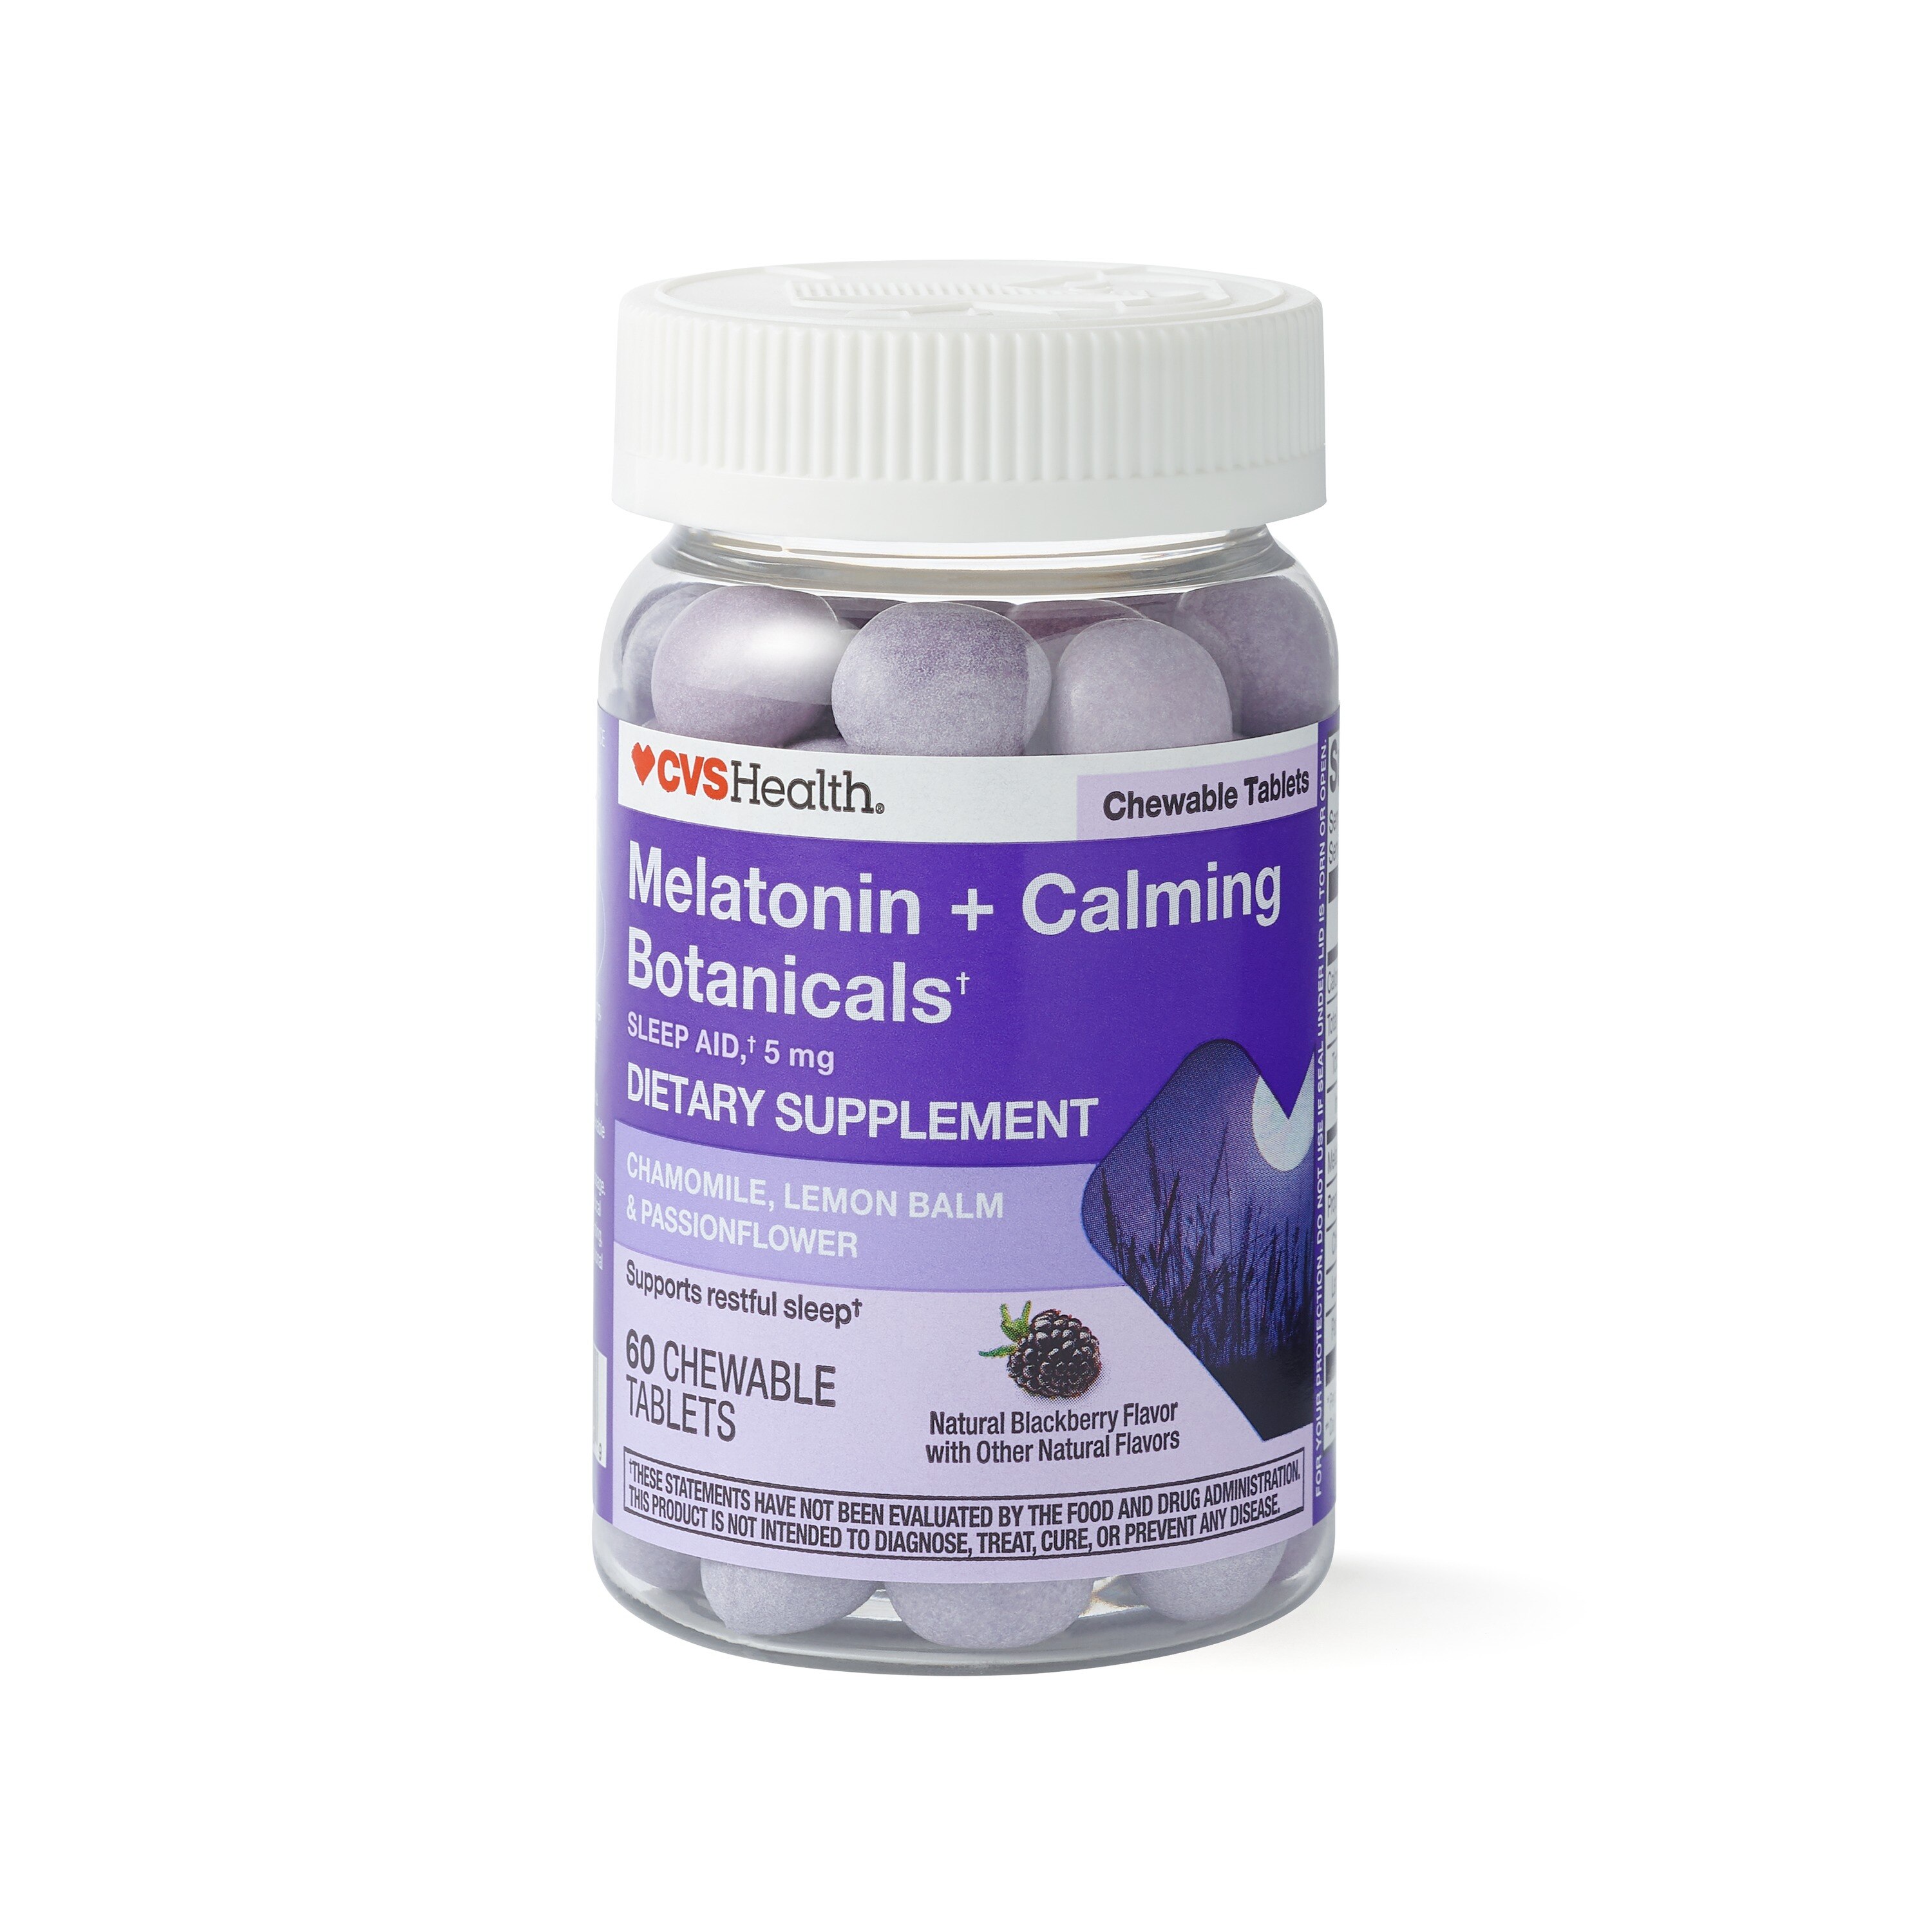 CVS Health Melatonin + Calming Botanicals Blend Chewable Tablets, 5 mg, Natural Blackberry Flavor